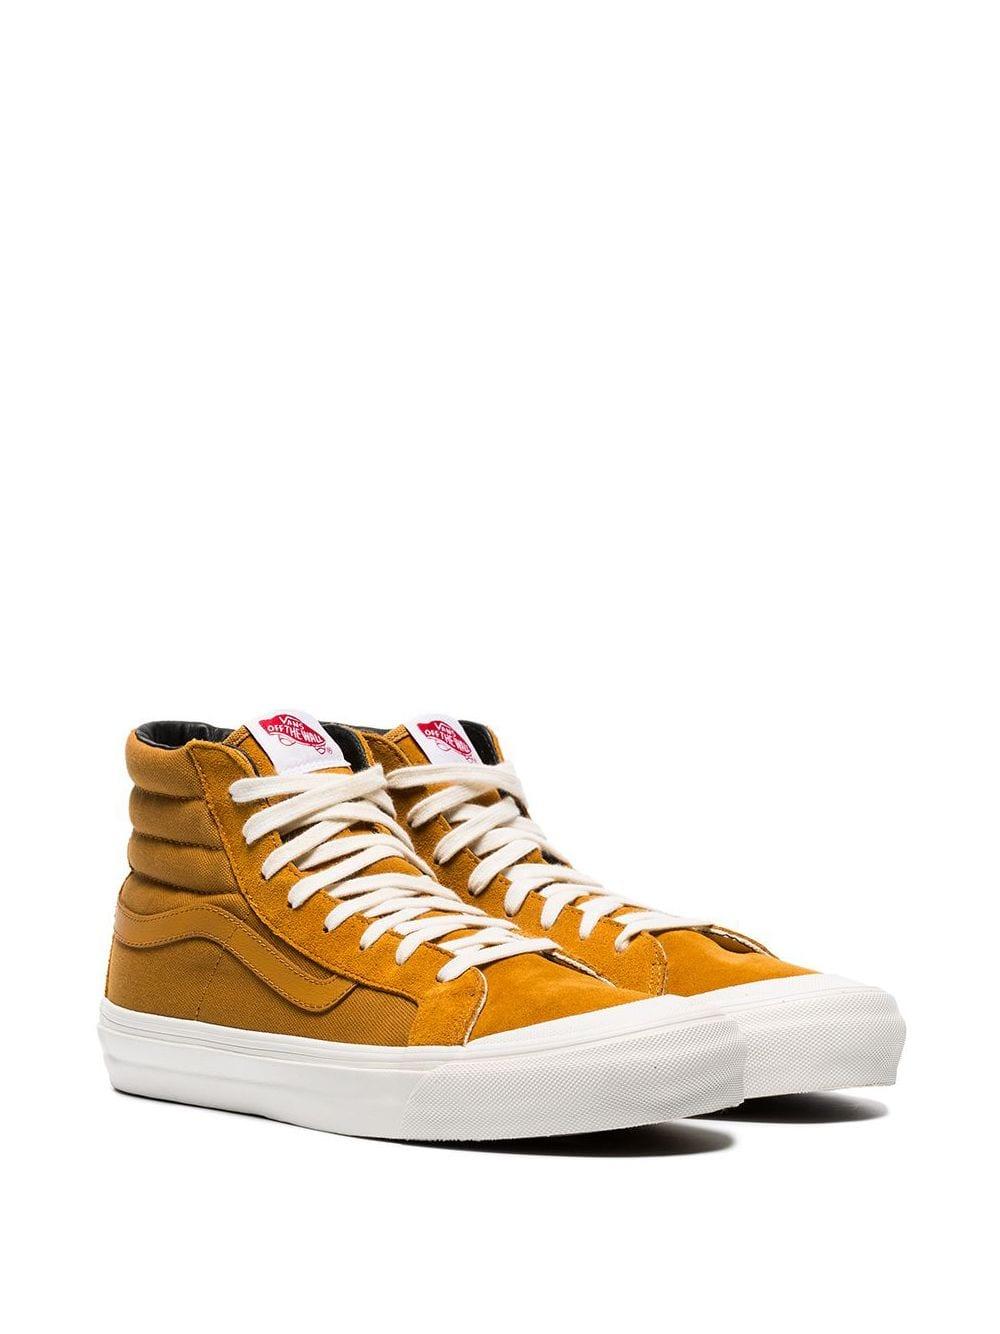 Vans Mustard Yellow Og Style 138 Hi-top Suede Sneakers for Men - Lyst